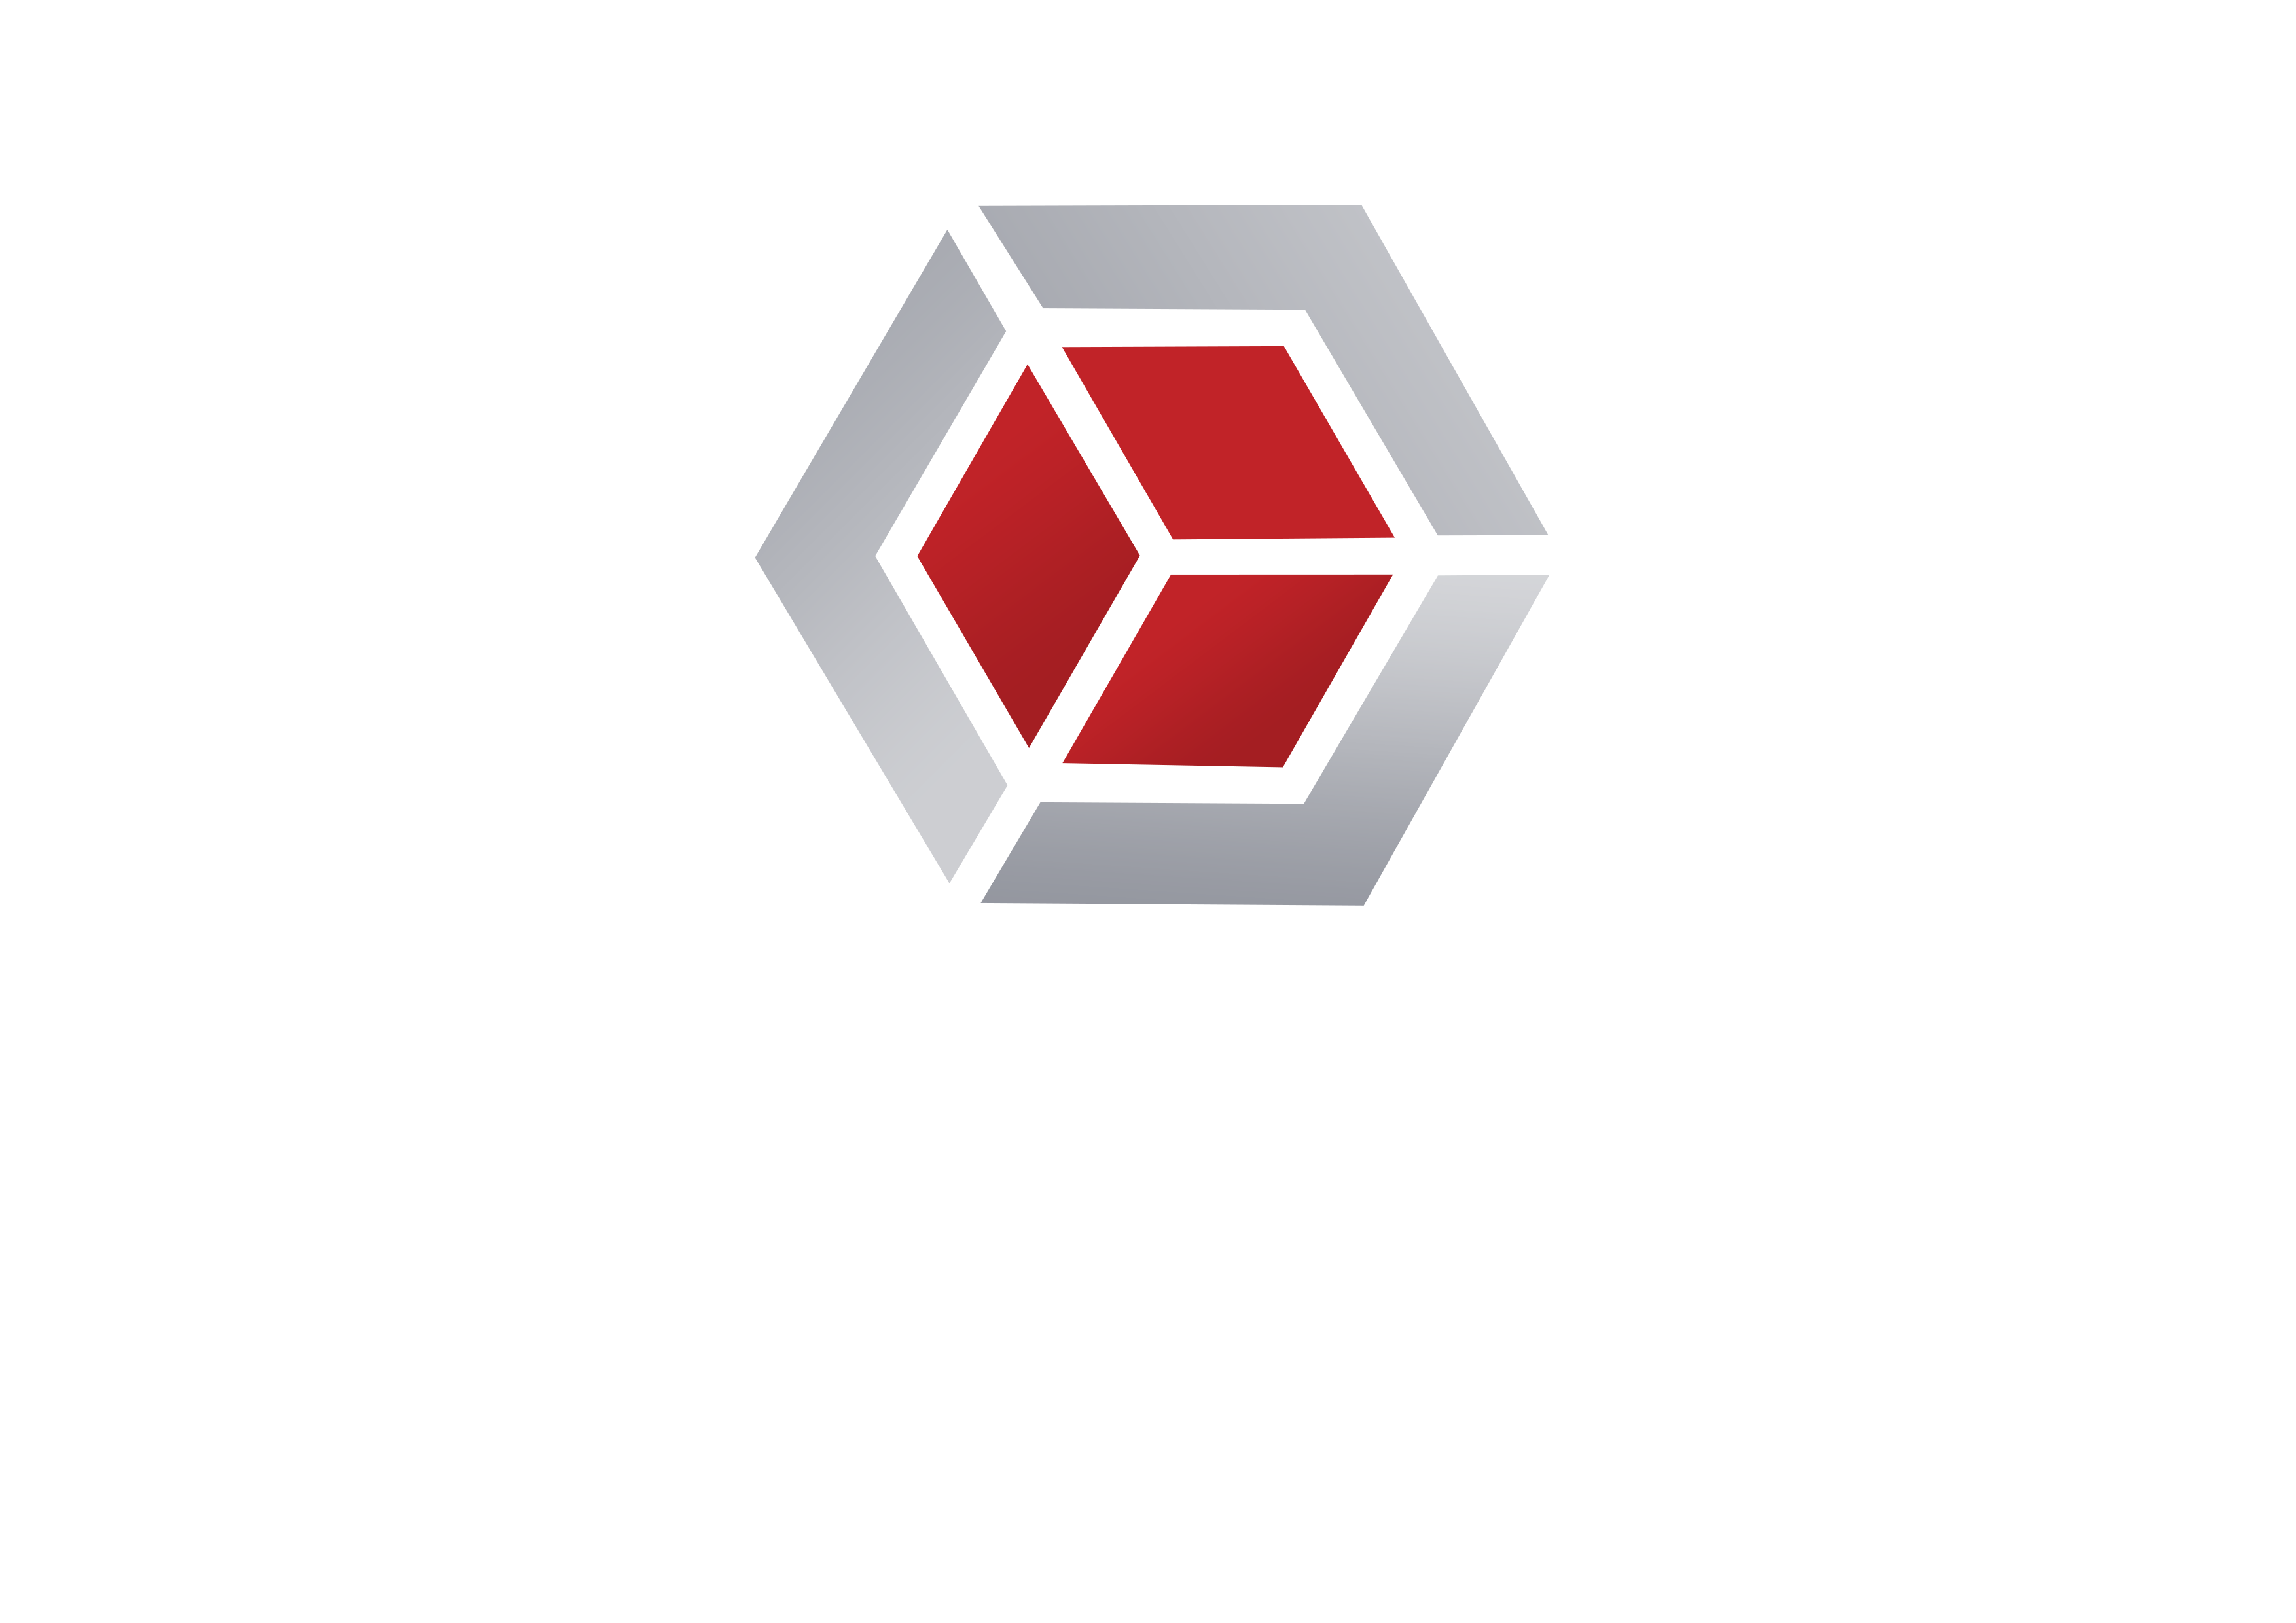 Laatuteos Oy-logo